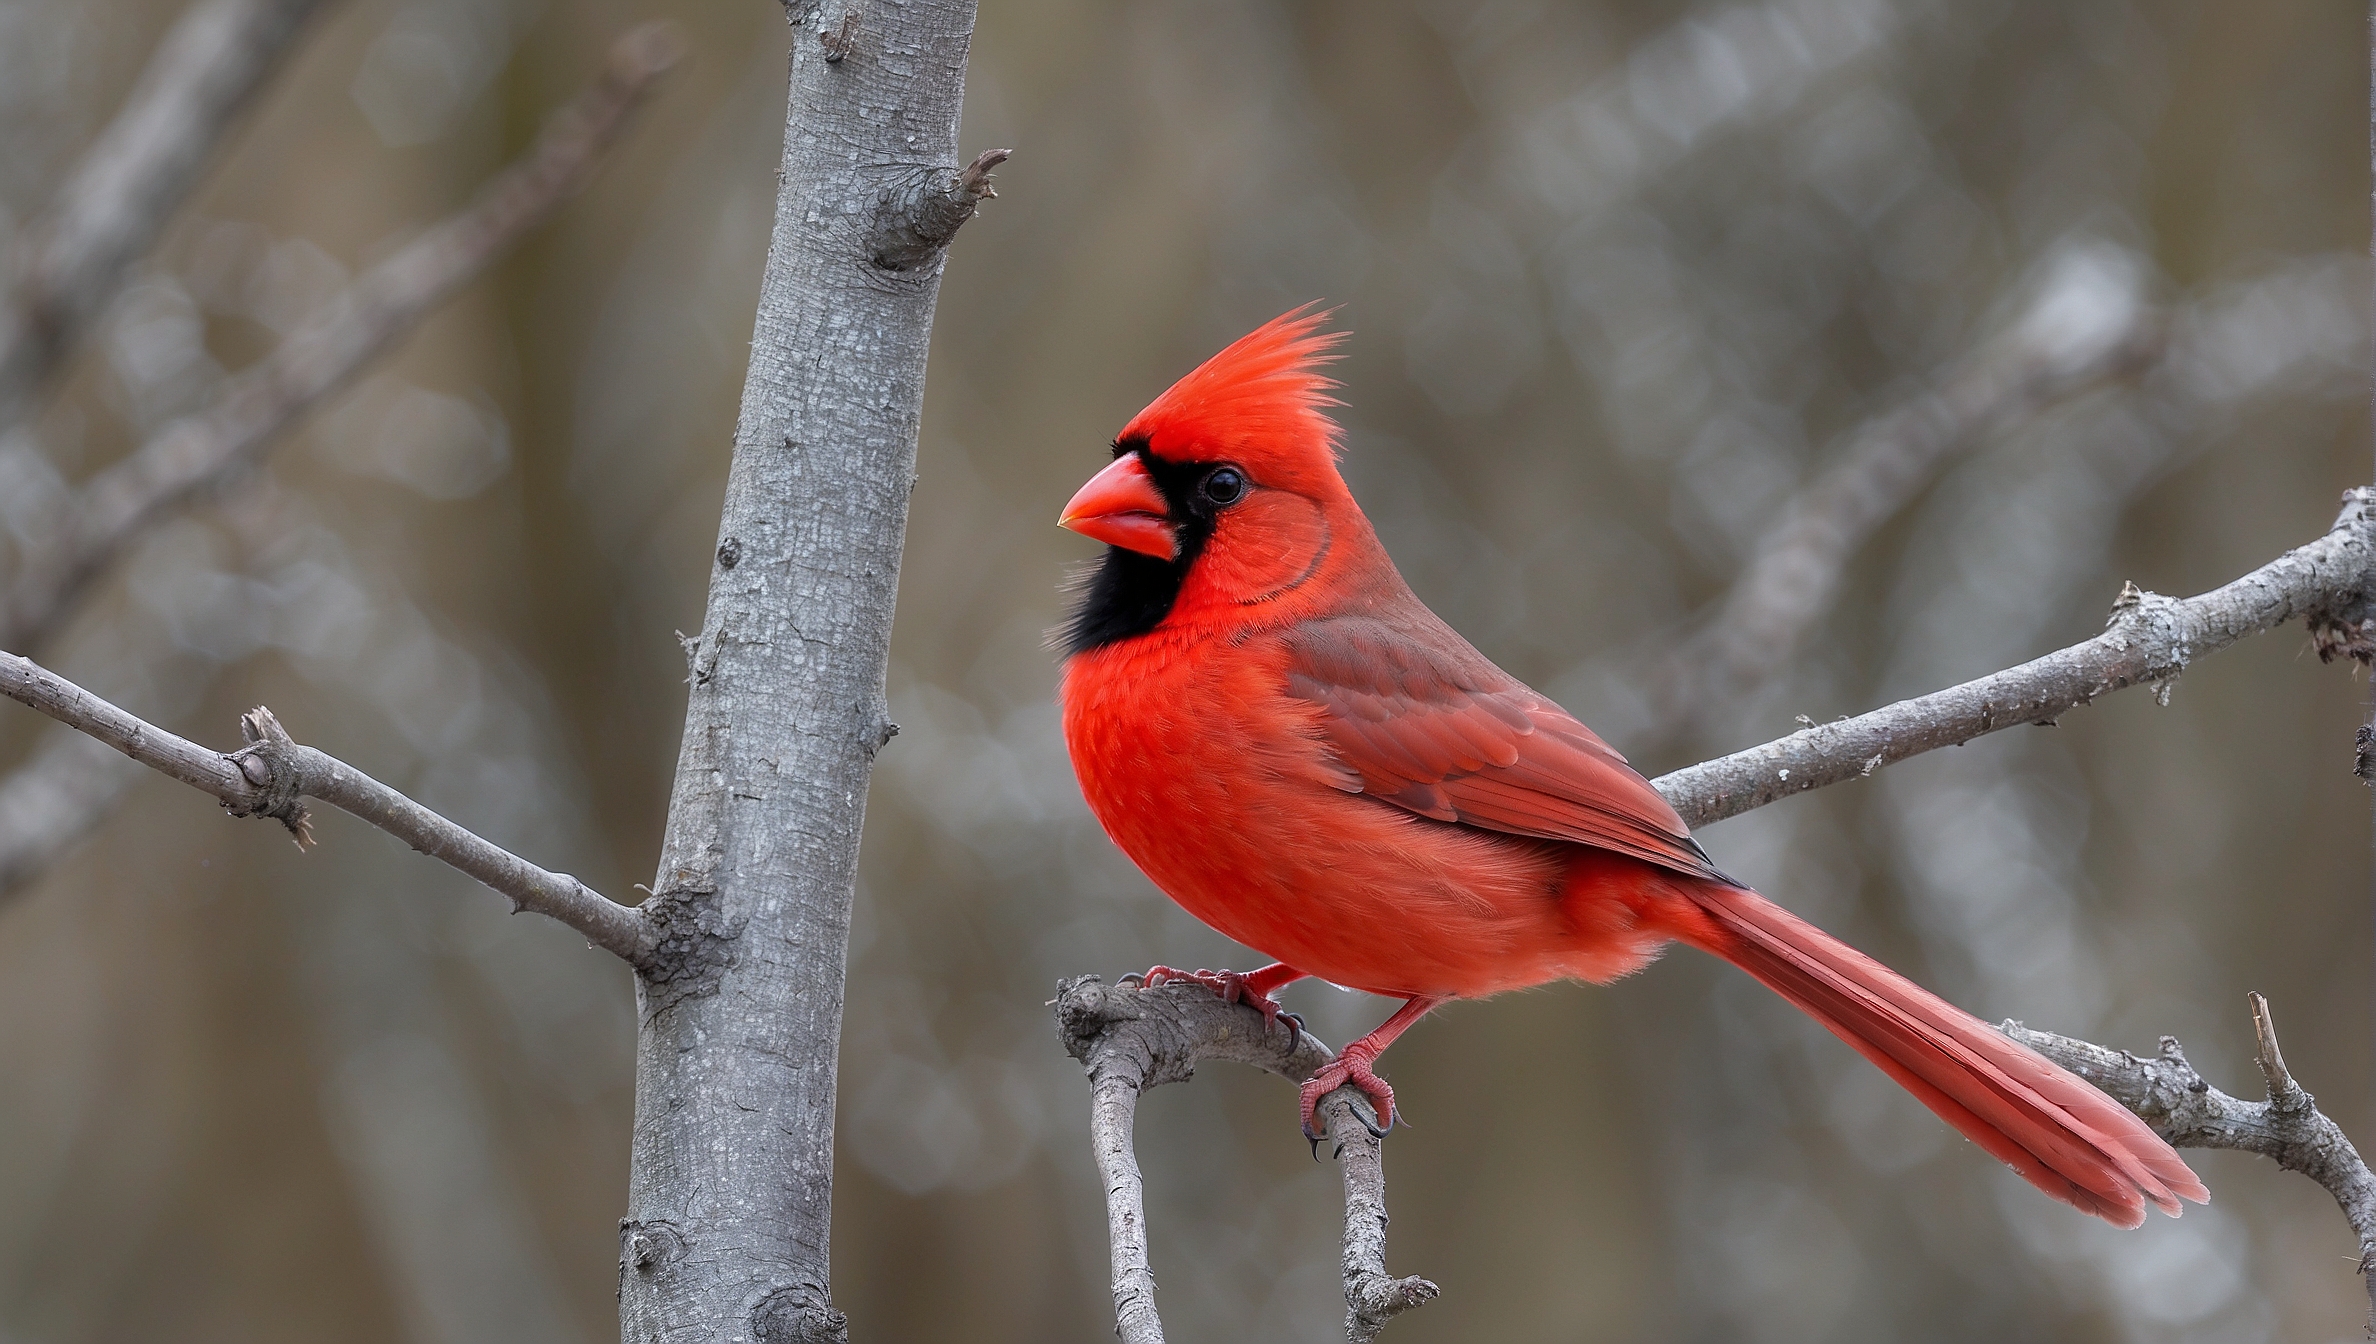 Where Do Red Cardinals Nest?